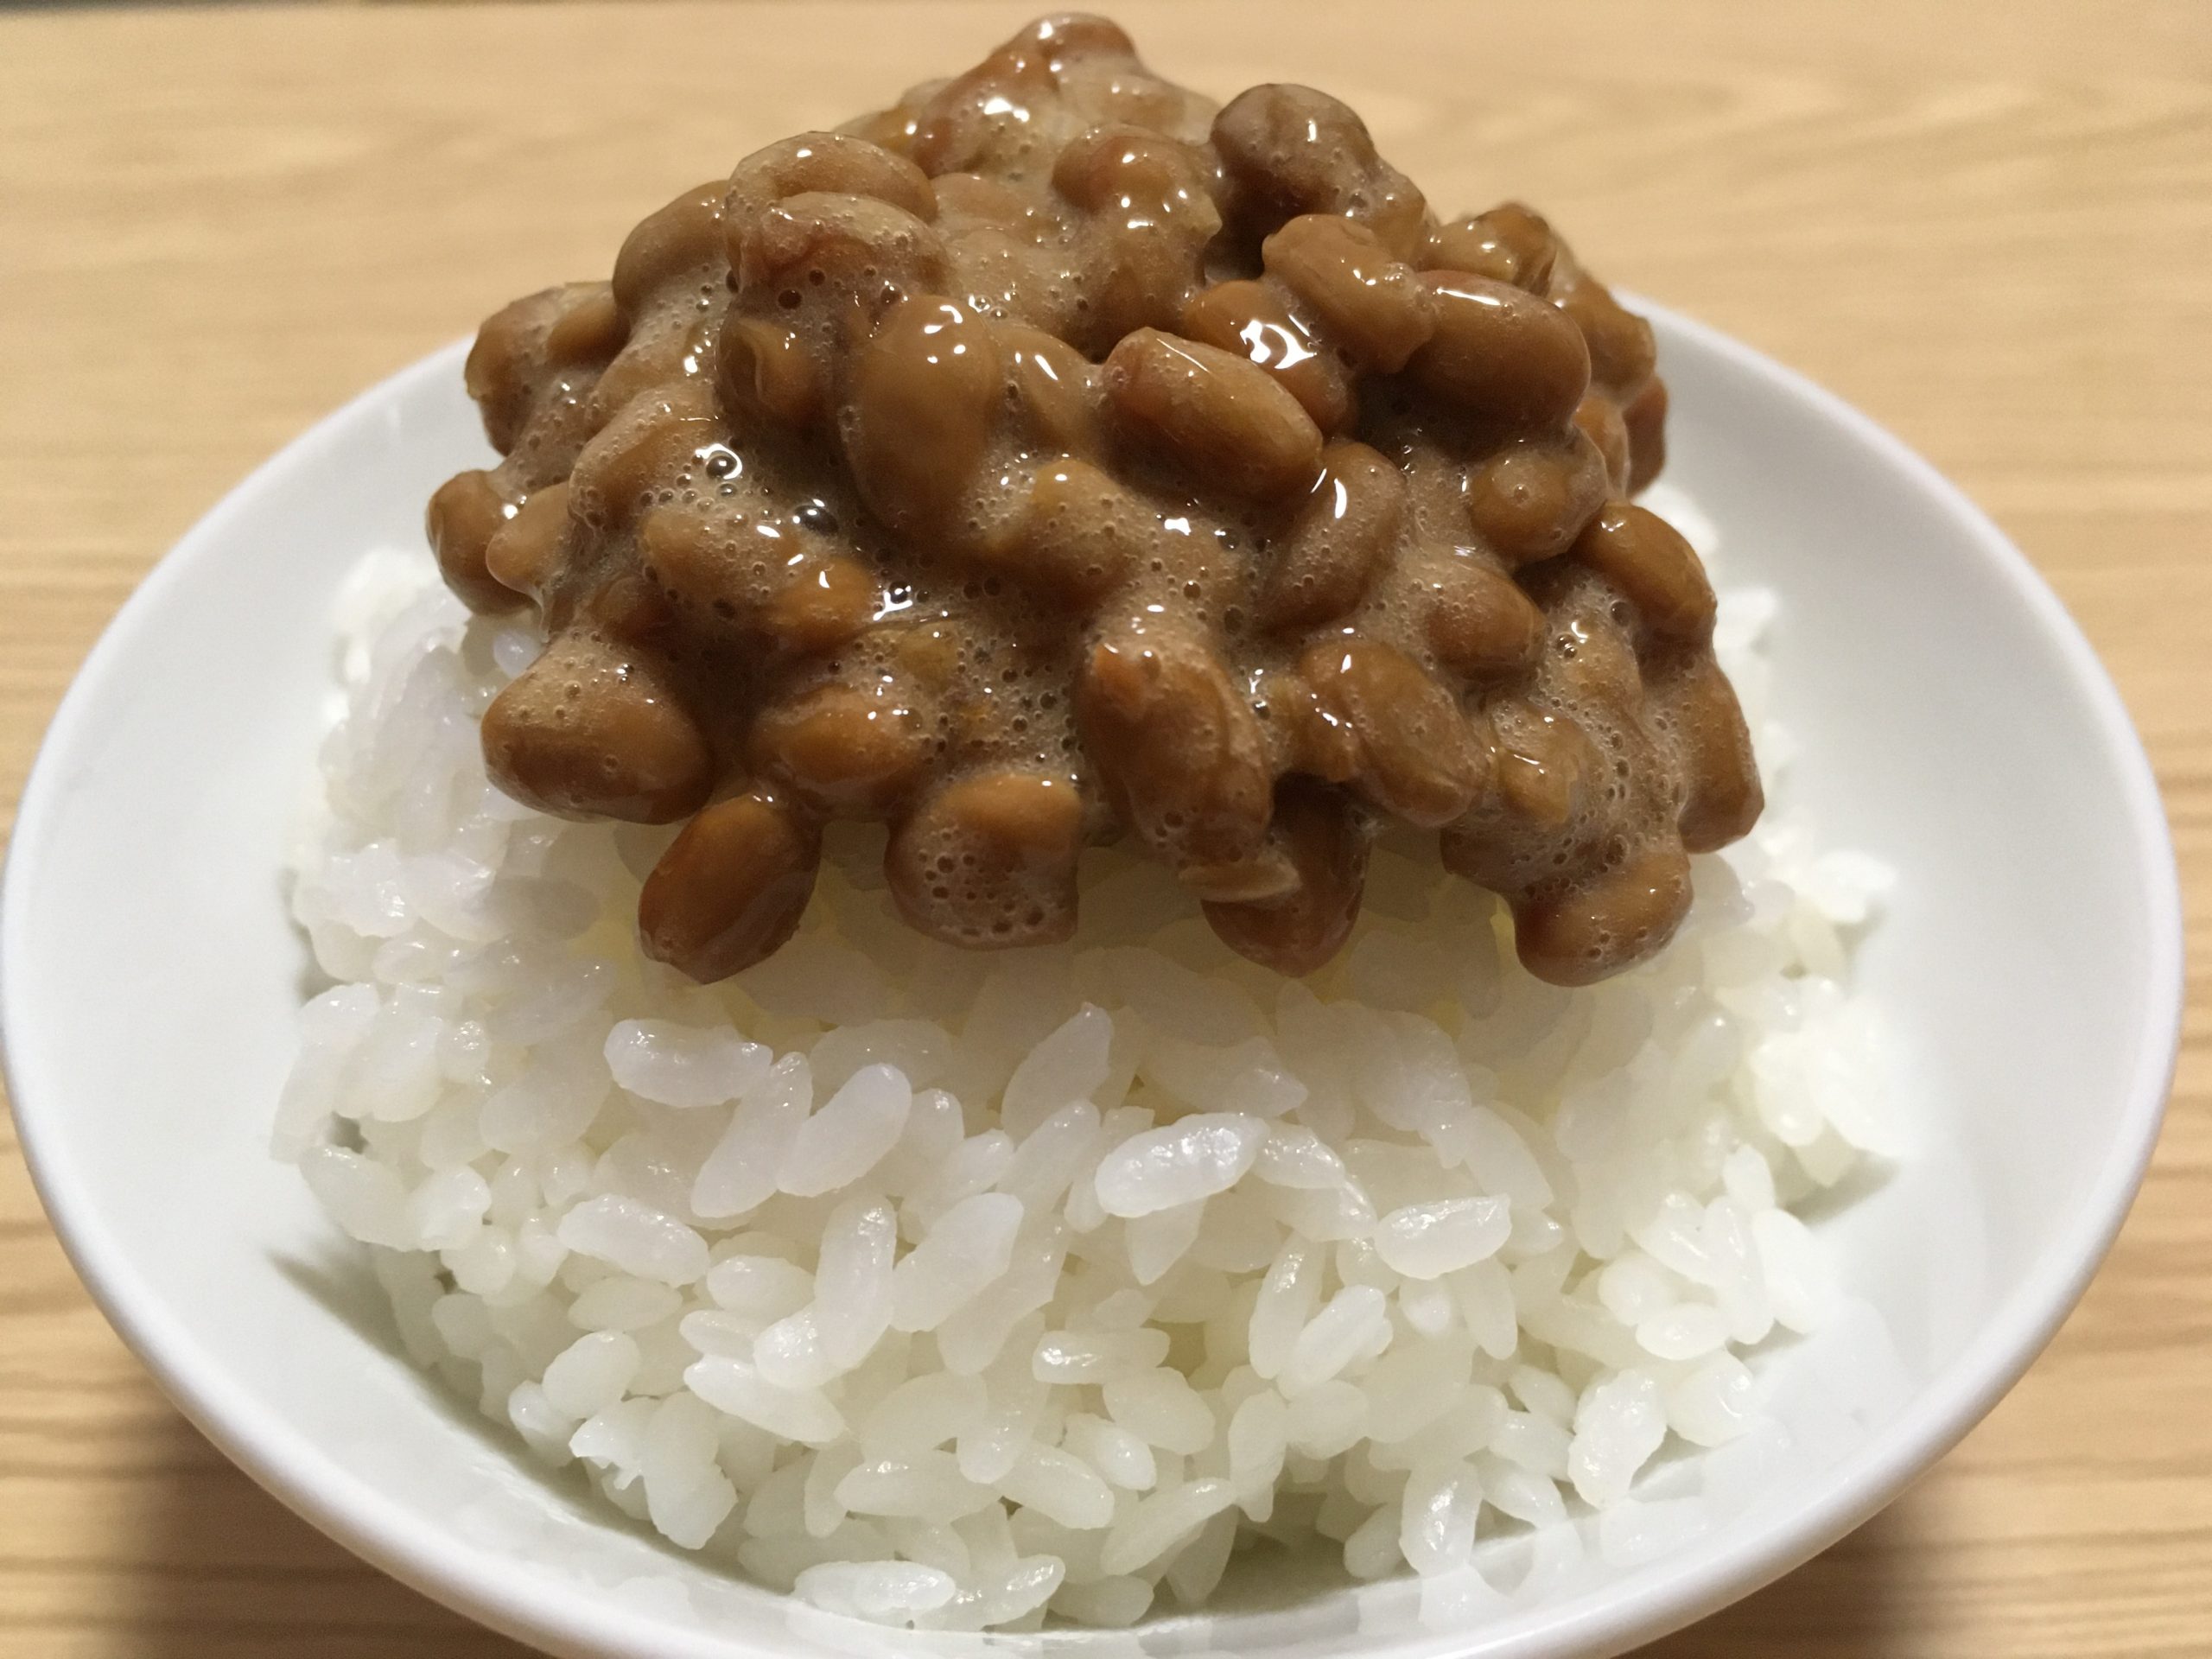 日本的國民食品-納豆-